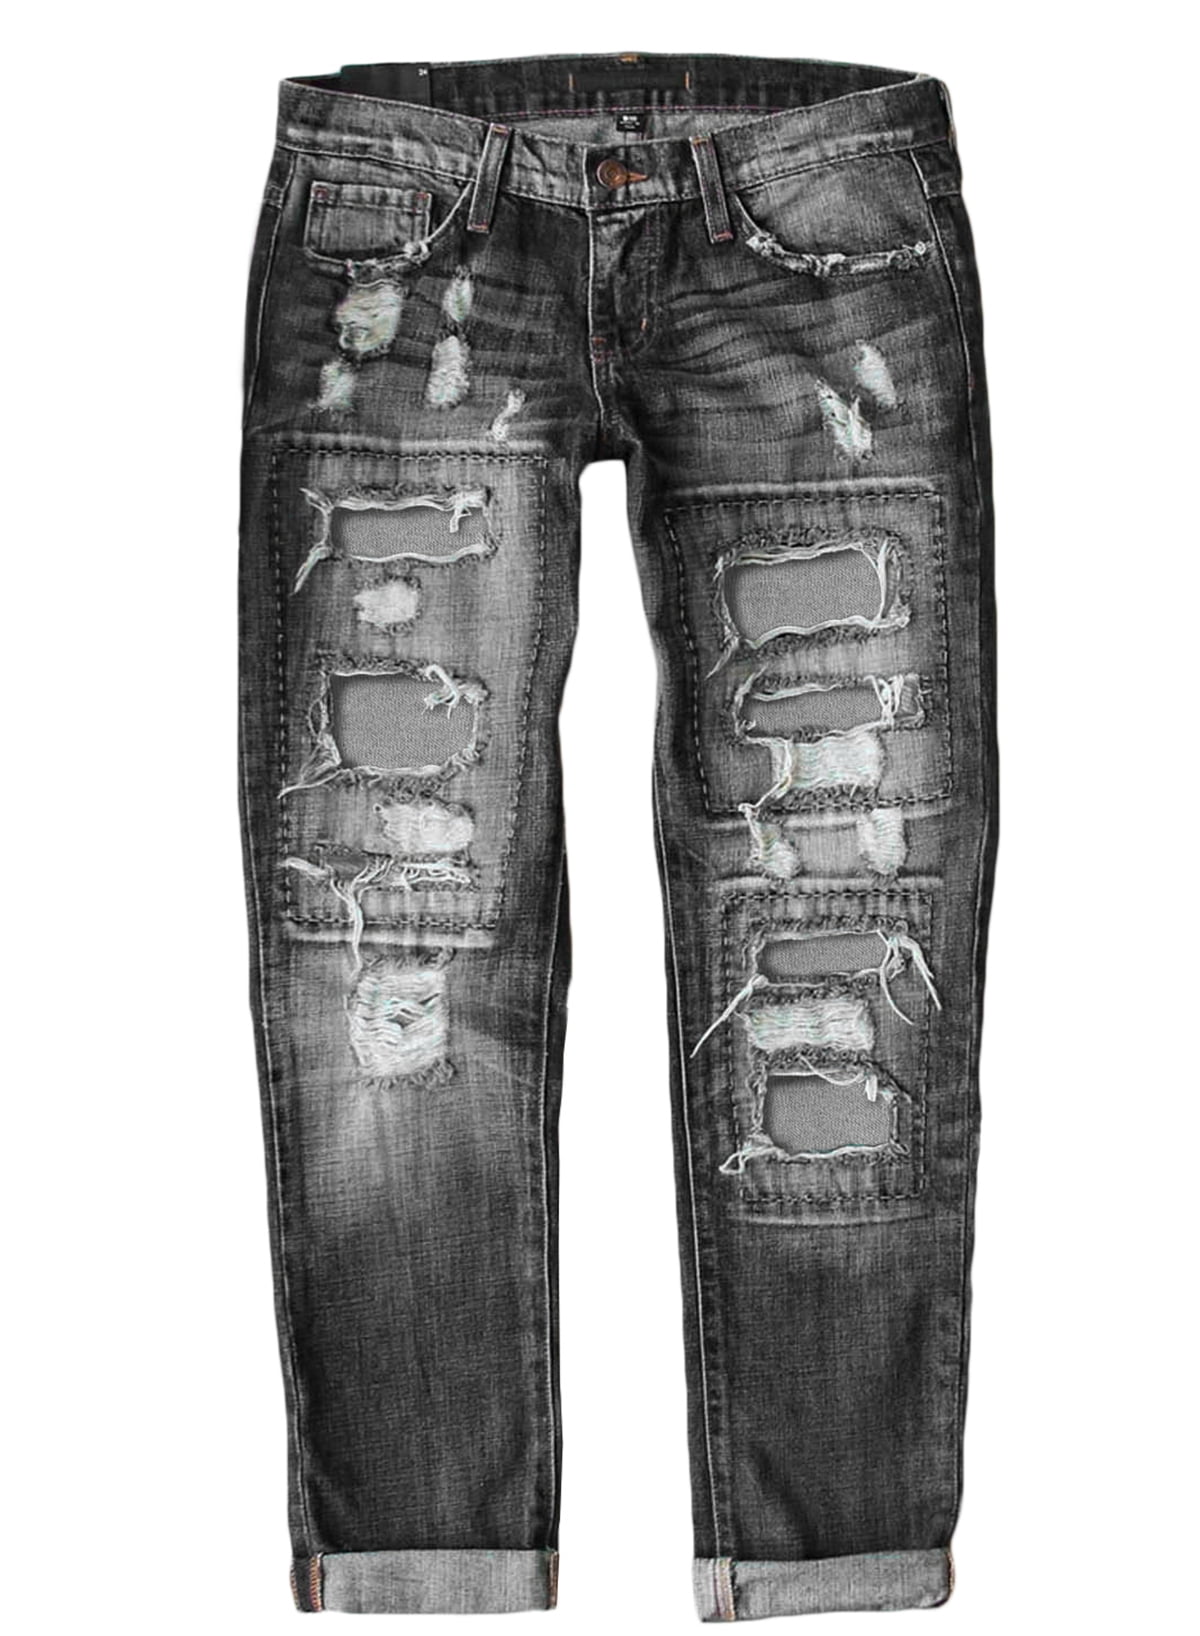 Eytino Straight Leg Boyfriend Jeans for Women Destroyed Distressed ...